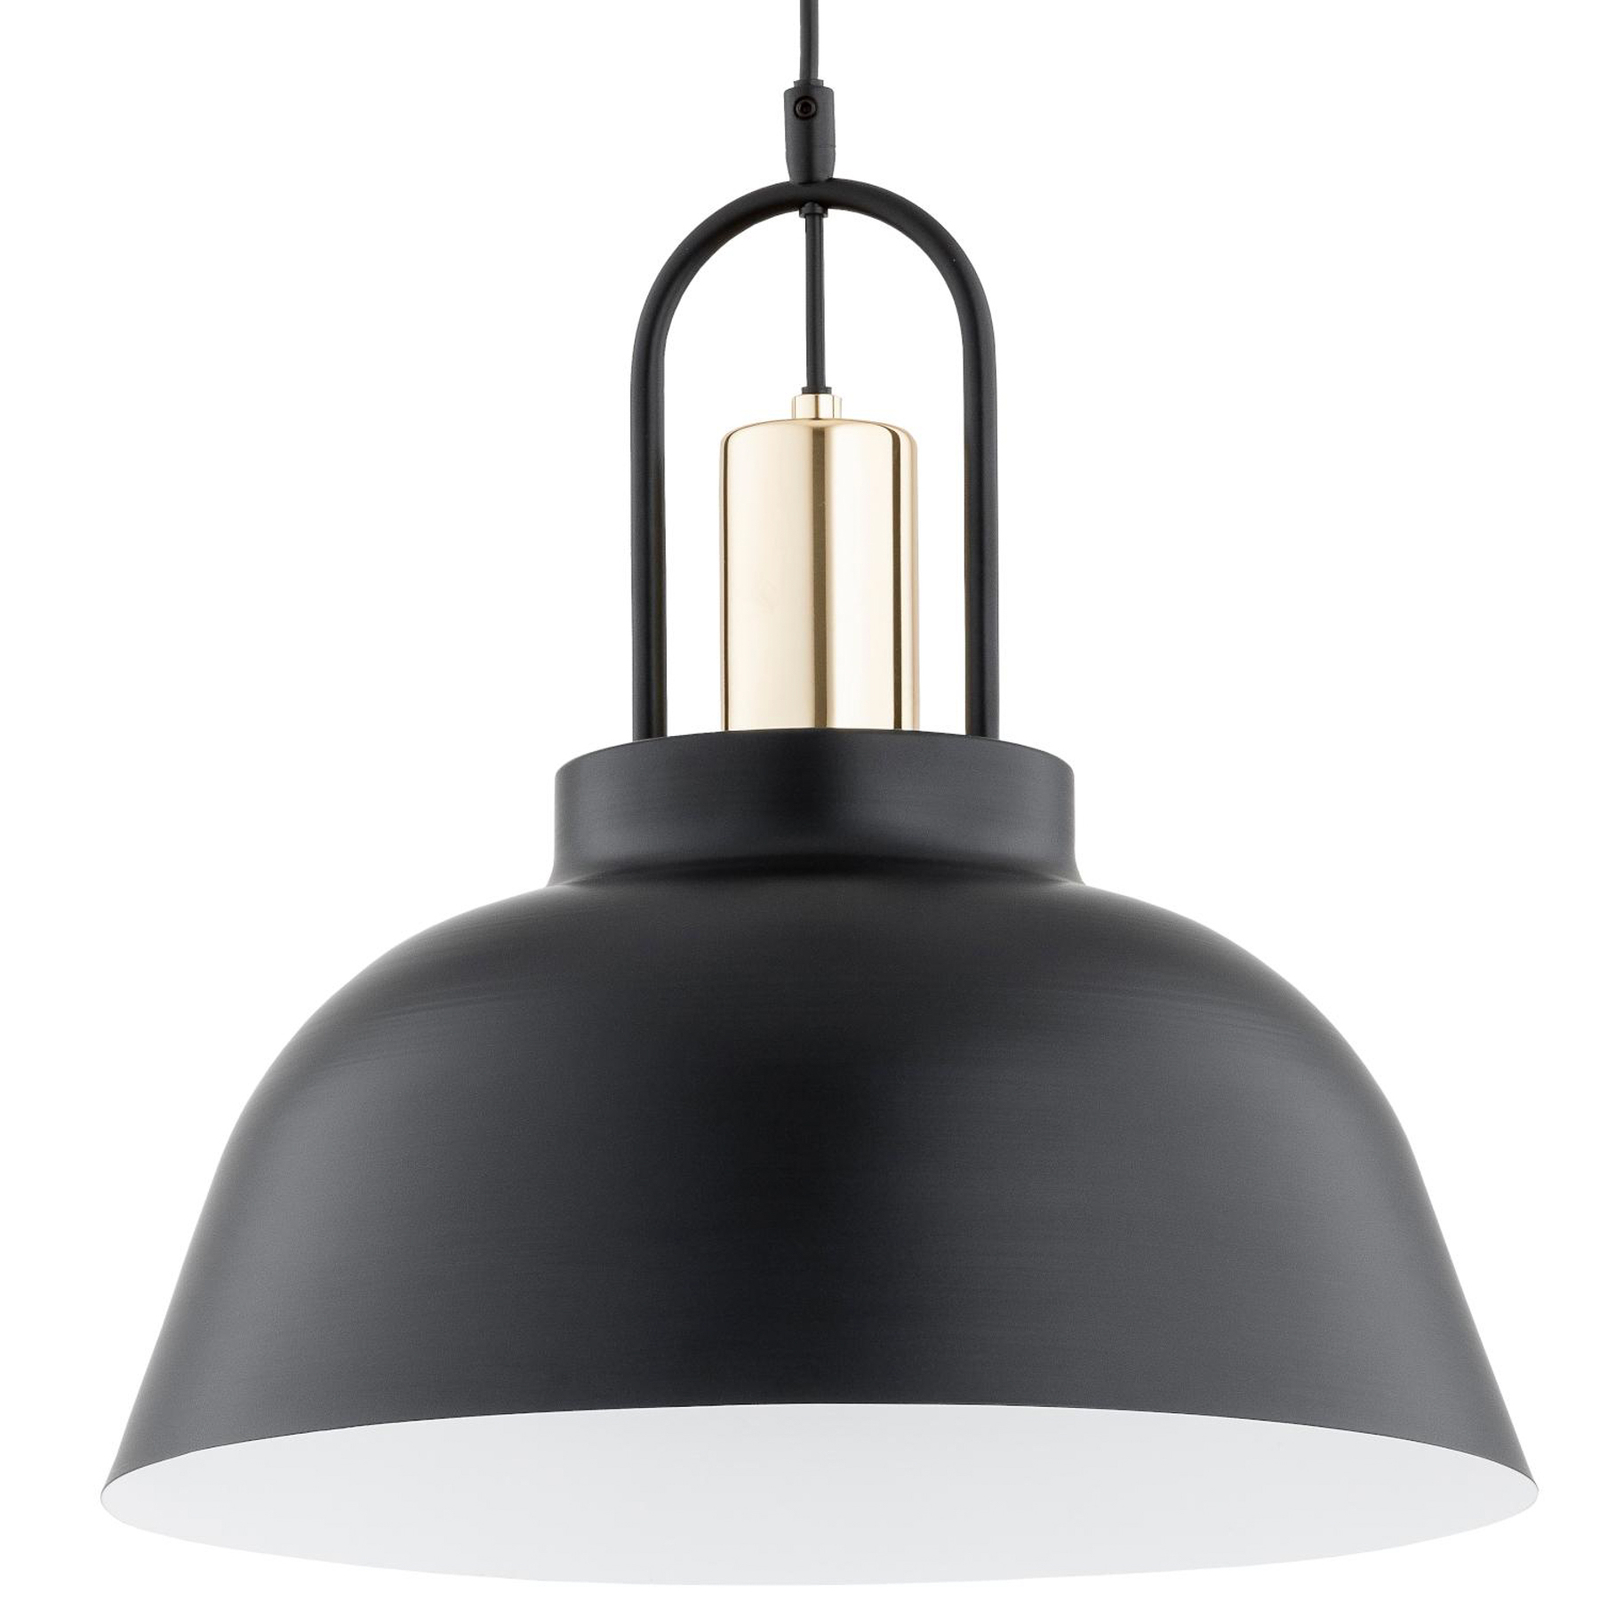 Hanglamp Mirave, zwart/goudkleurig, Ø 39,5 cm, metaal